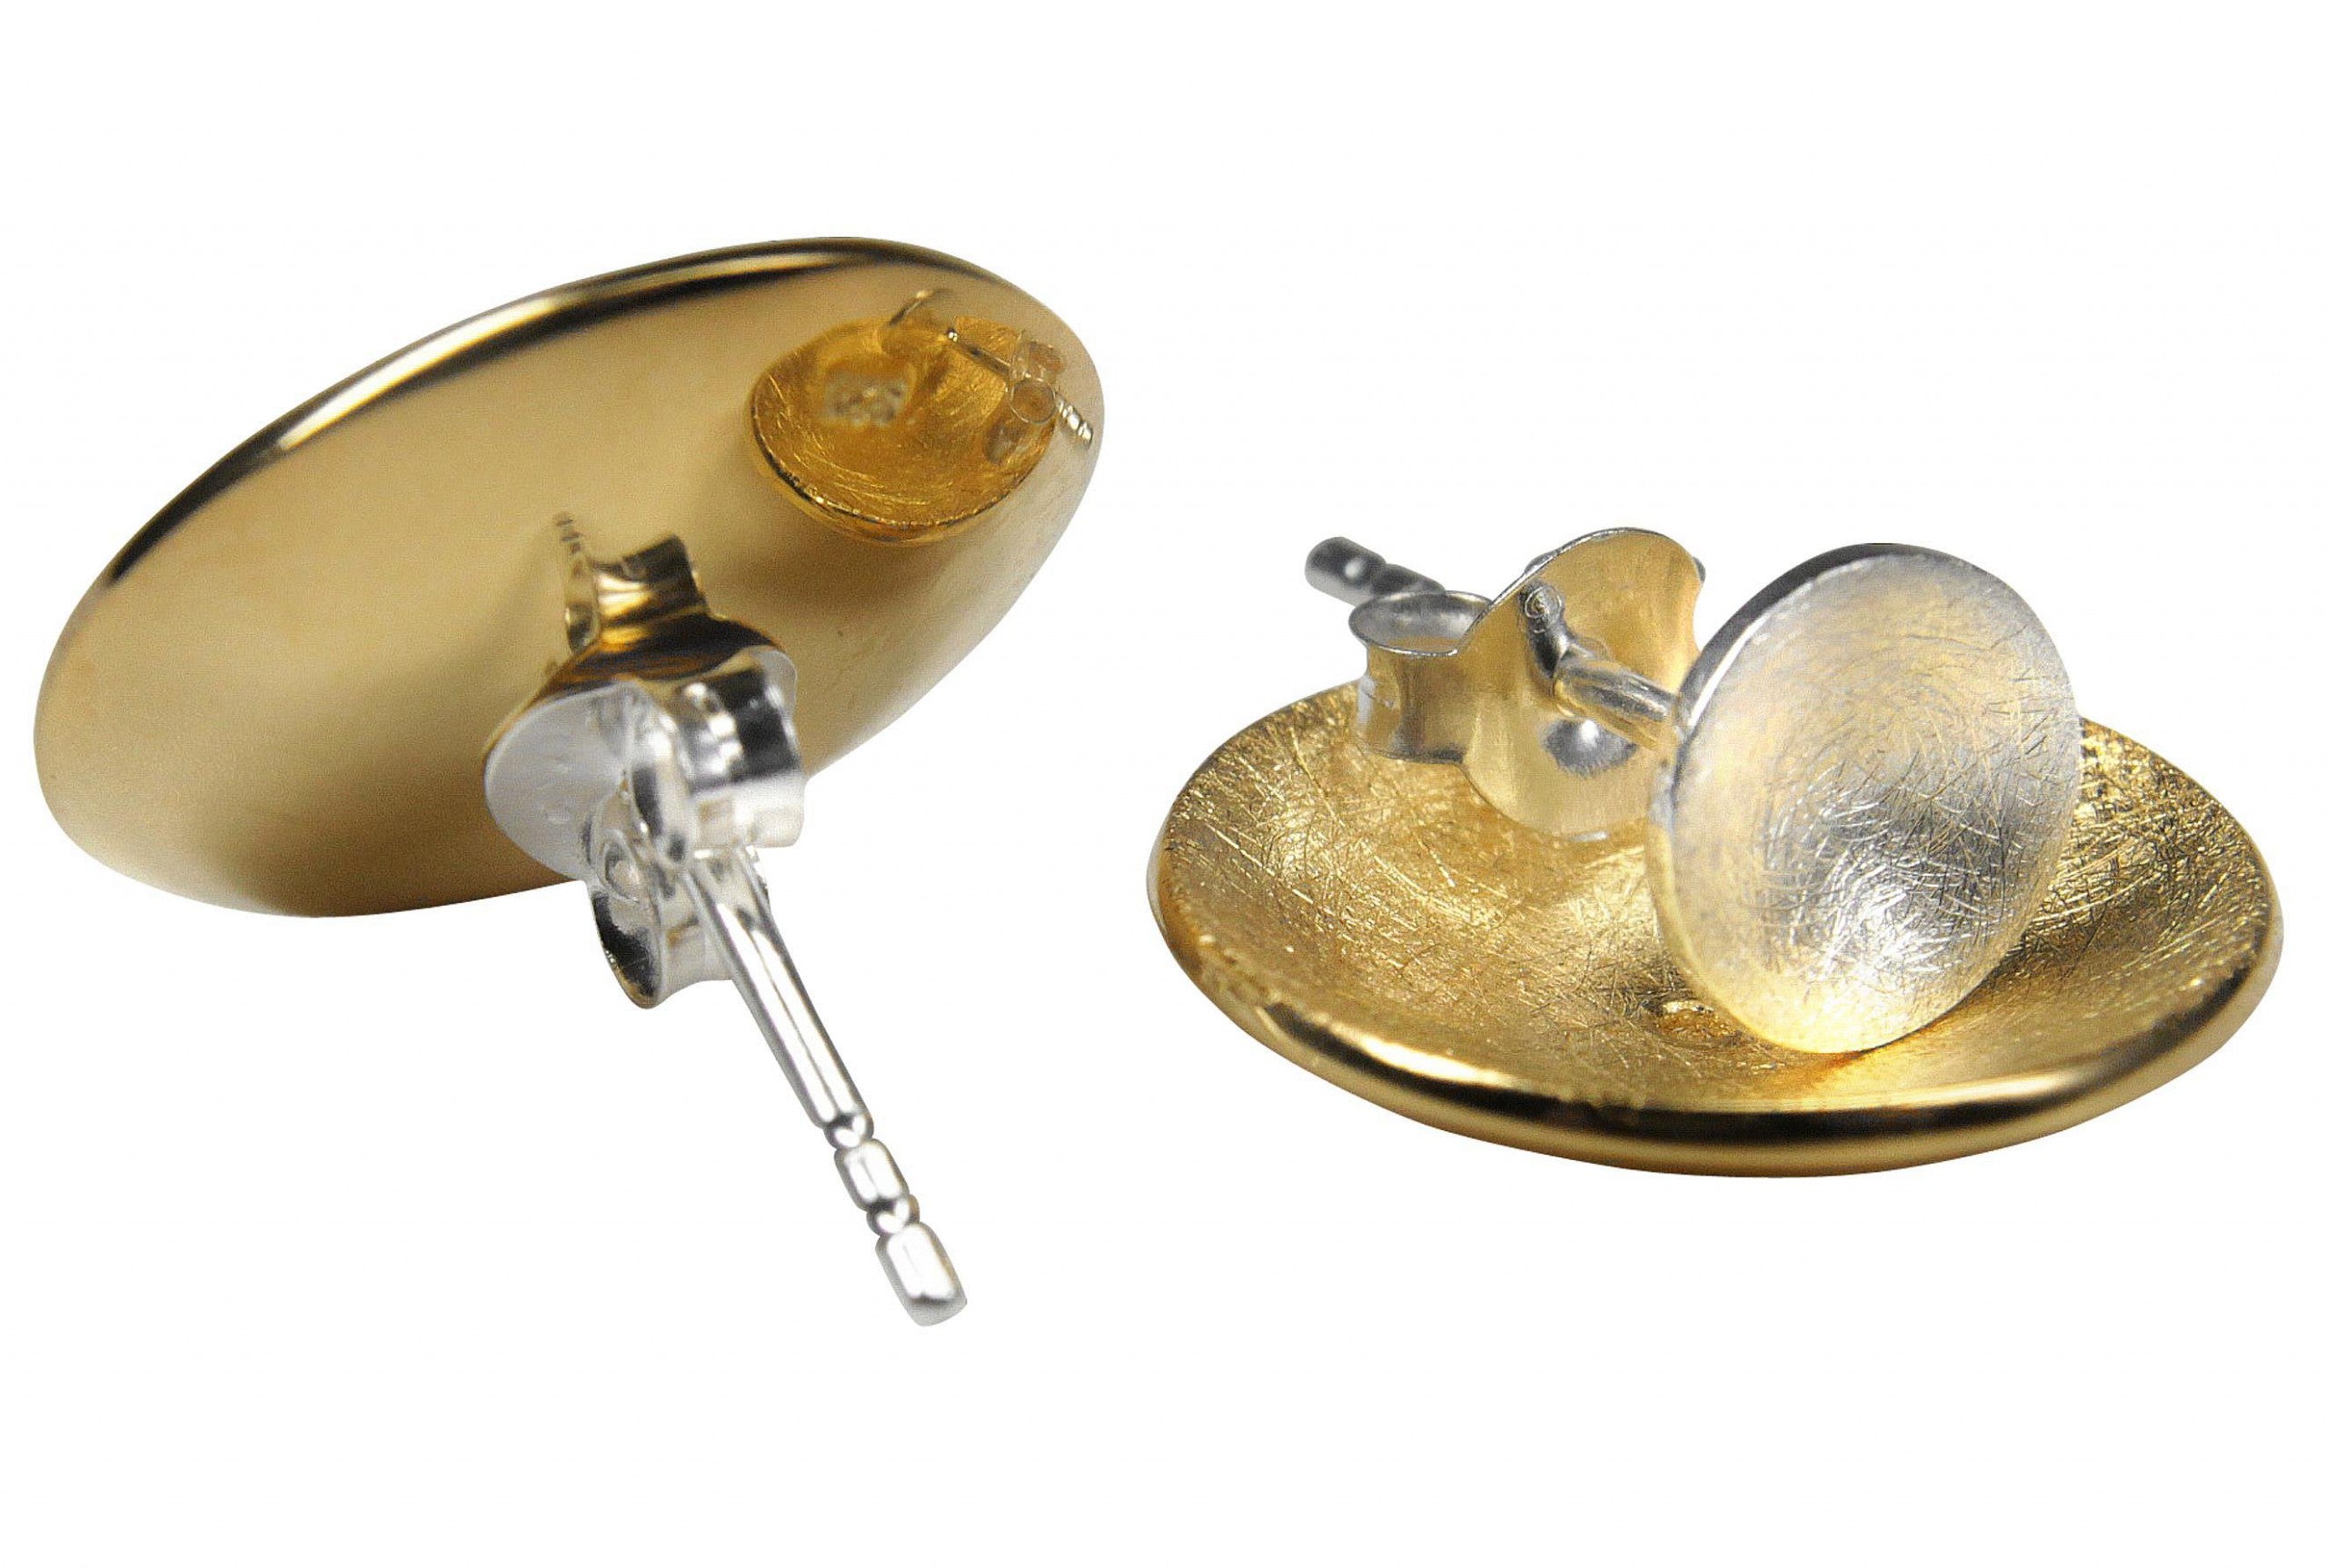 Frei kombinierbare Ohrstecker in Form zweier Kreise aus jeweils einer äußeren Schale und einem inneren Stecker aus Silber. Die äußere Schale ist mit Gold plattiert ist.